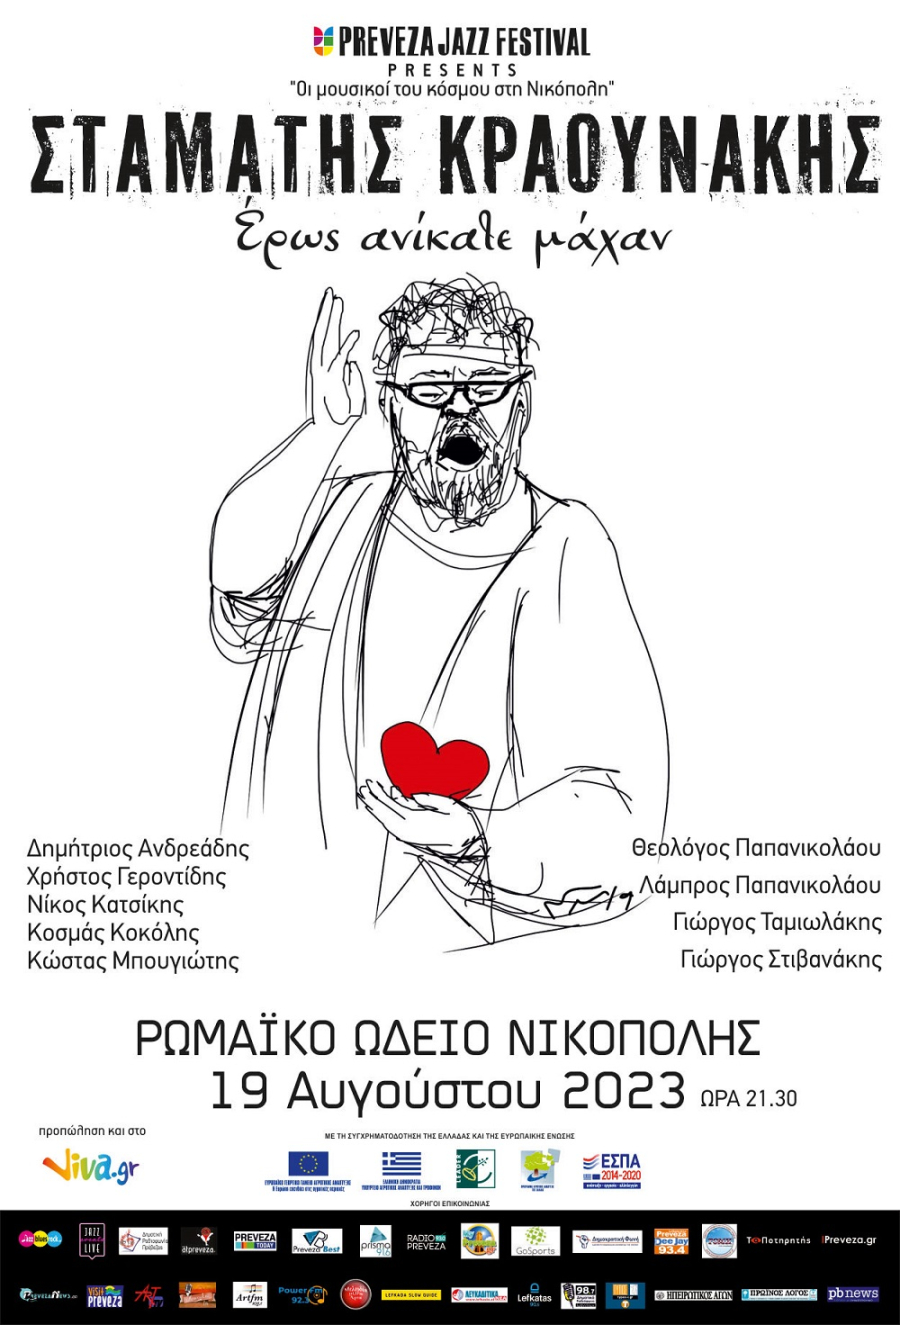 "Έρως ανίκατε μάχαν" - Ο Σταμάτης Κραουνάκης στο Ρωμαϊκό Ωδείο της Νικόπολης